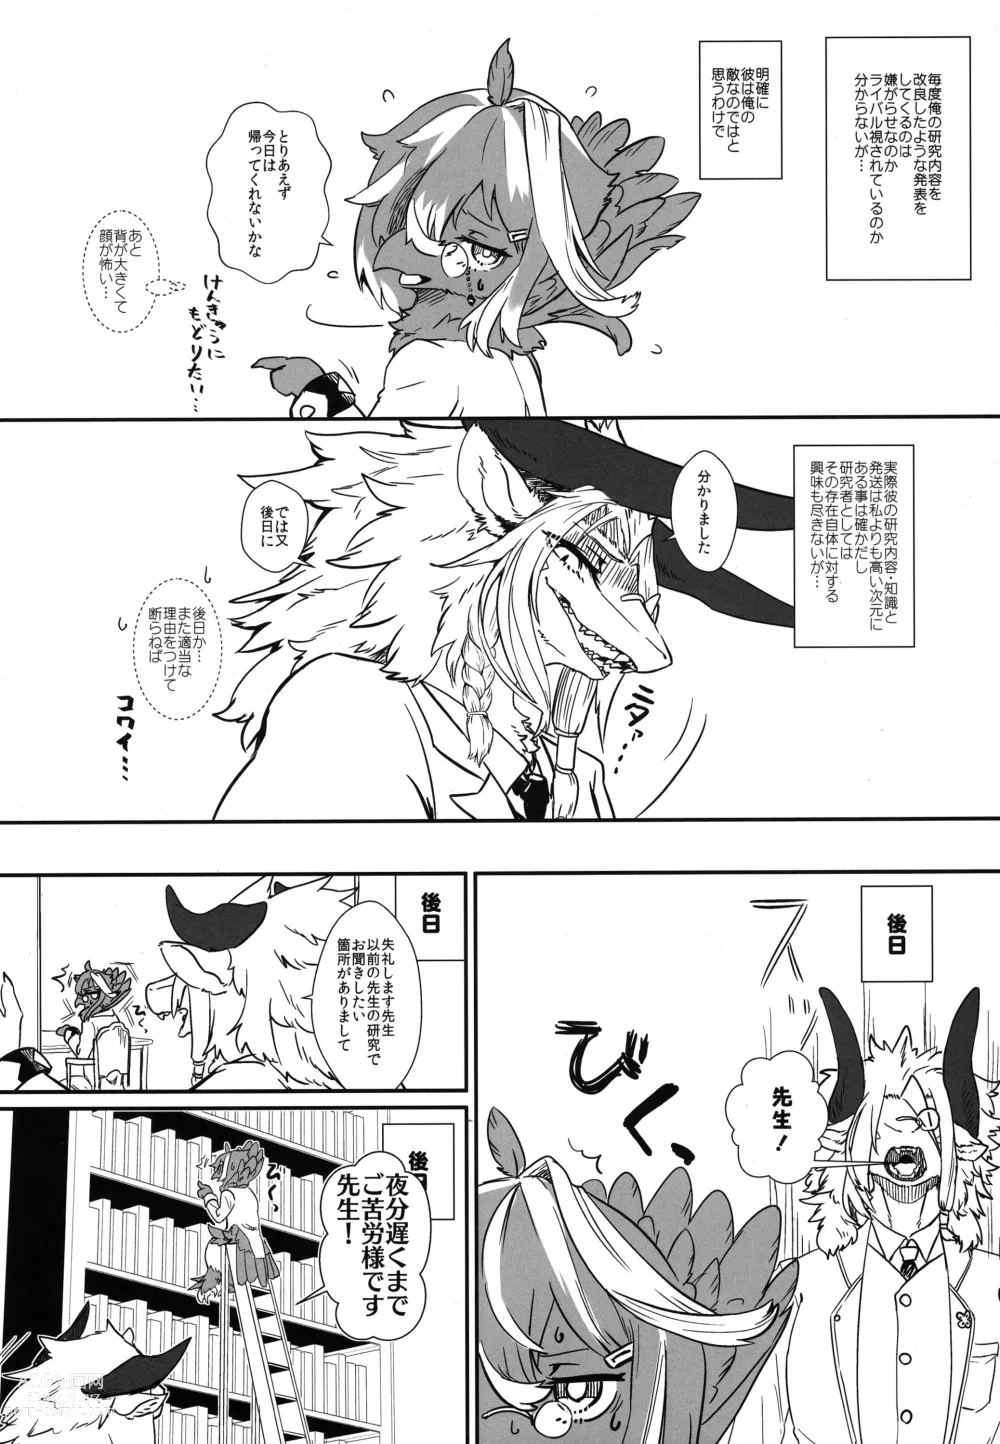 Page 6 of doujinshi Kimi no Te ga Mada Sawarenai